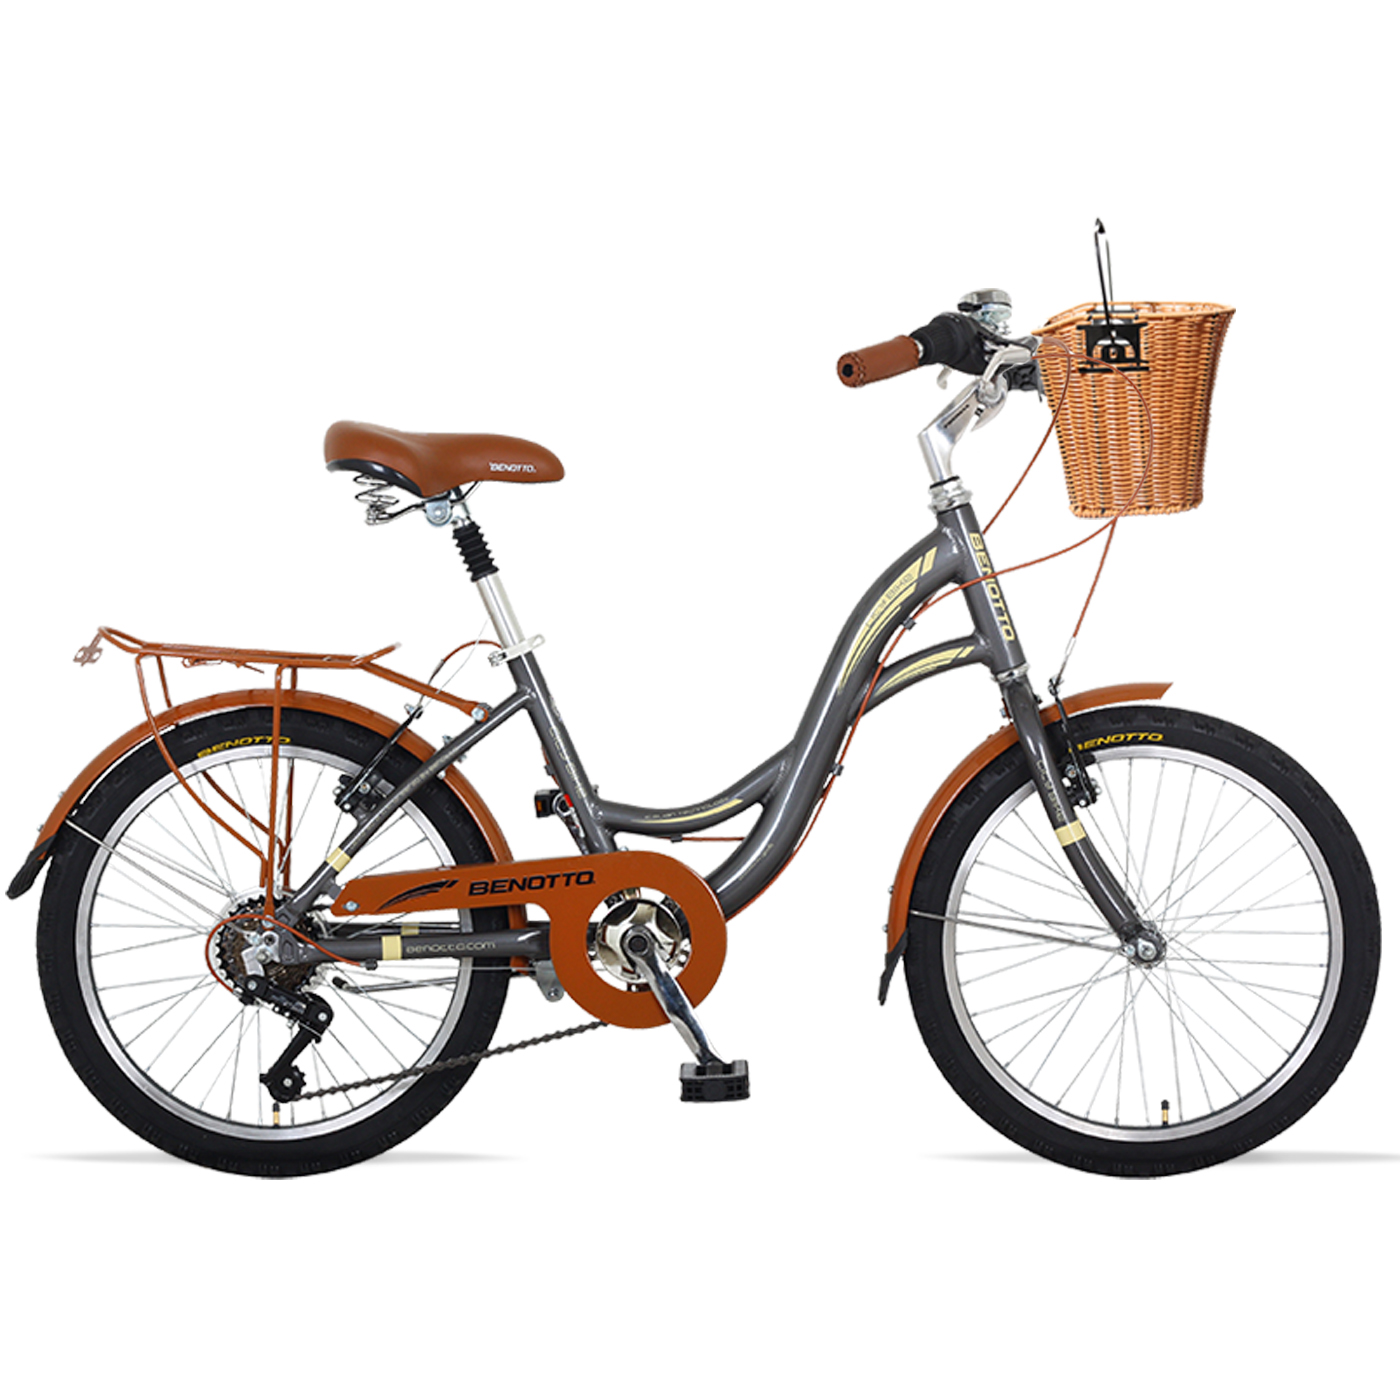 Bicicleta BENOTTO City CITY BIKE R20 7V. Mujer Sunrace Frenos ”V” Aluminio Gris Talla:UN